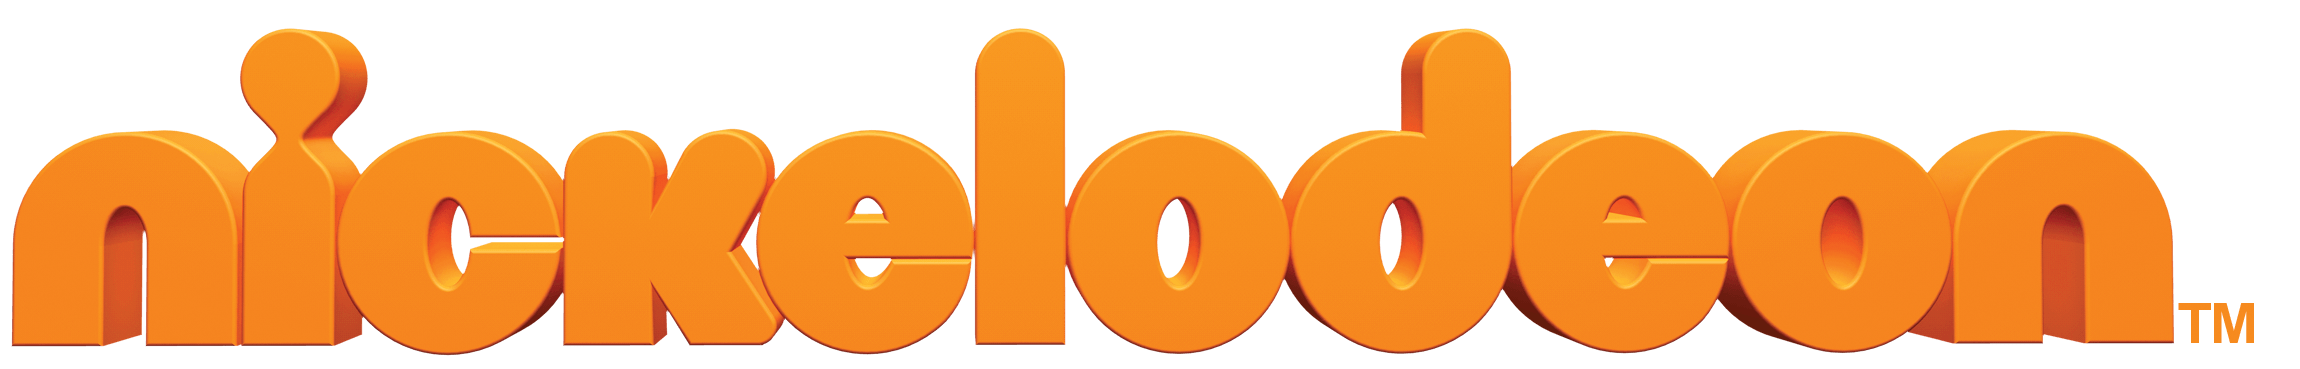 Nickelodeon Logo - Nickelodeon Logo Png - Free Transparent PNG Logos